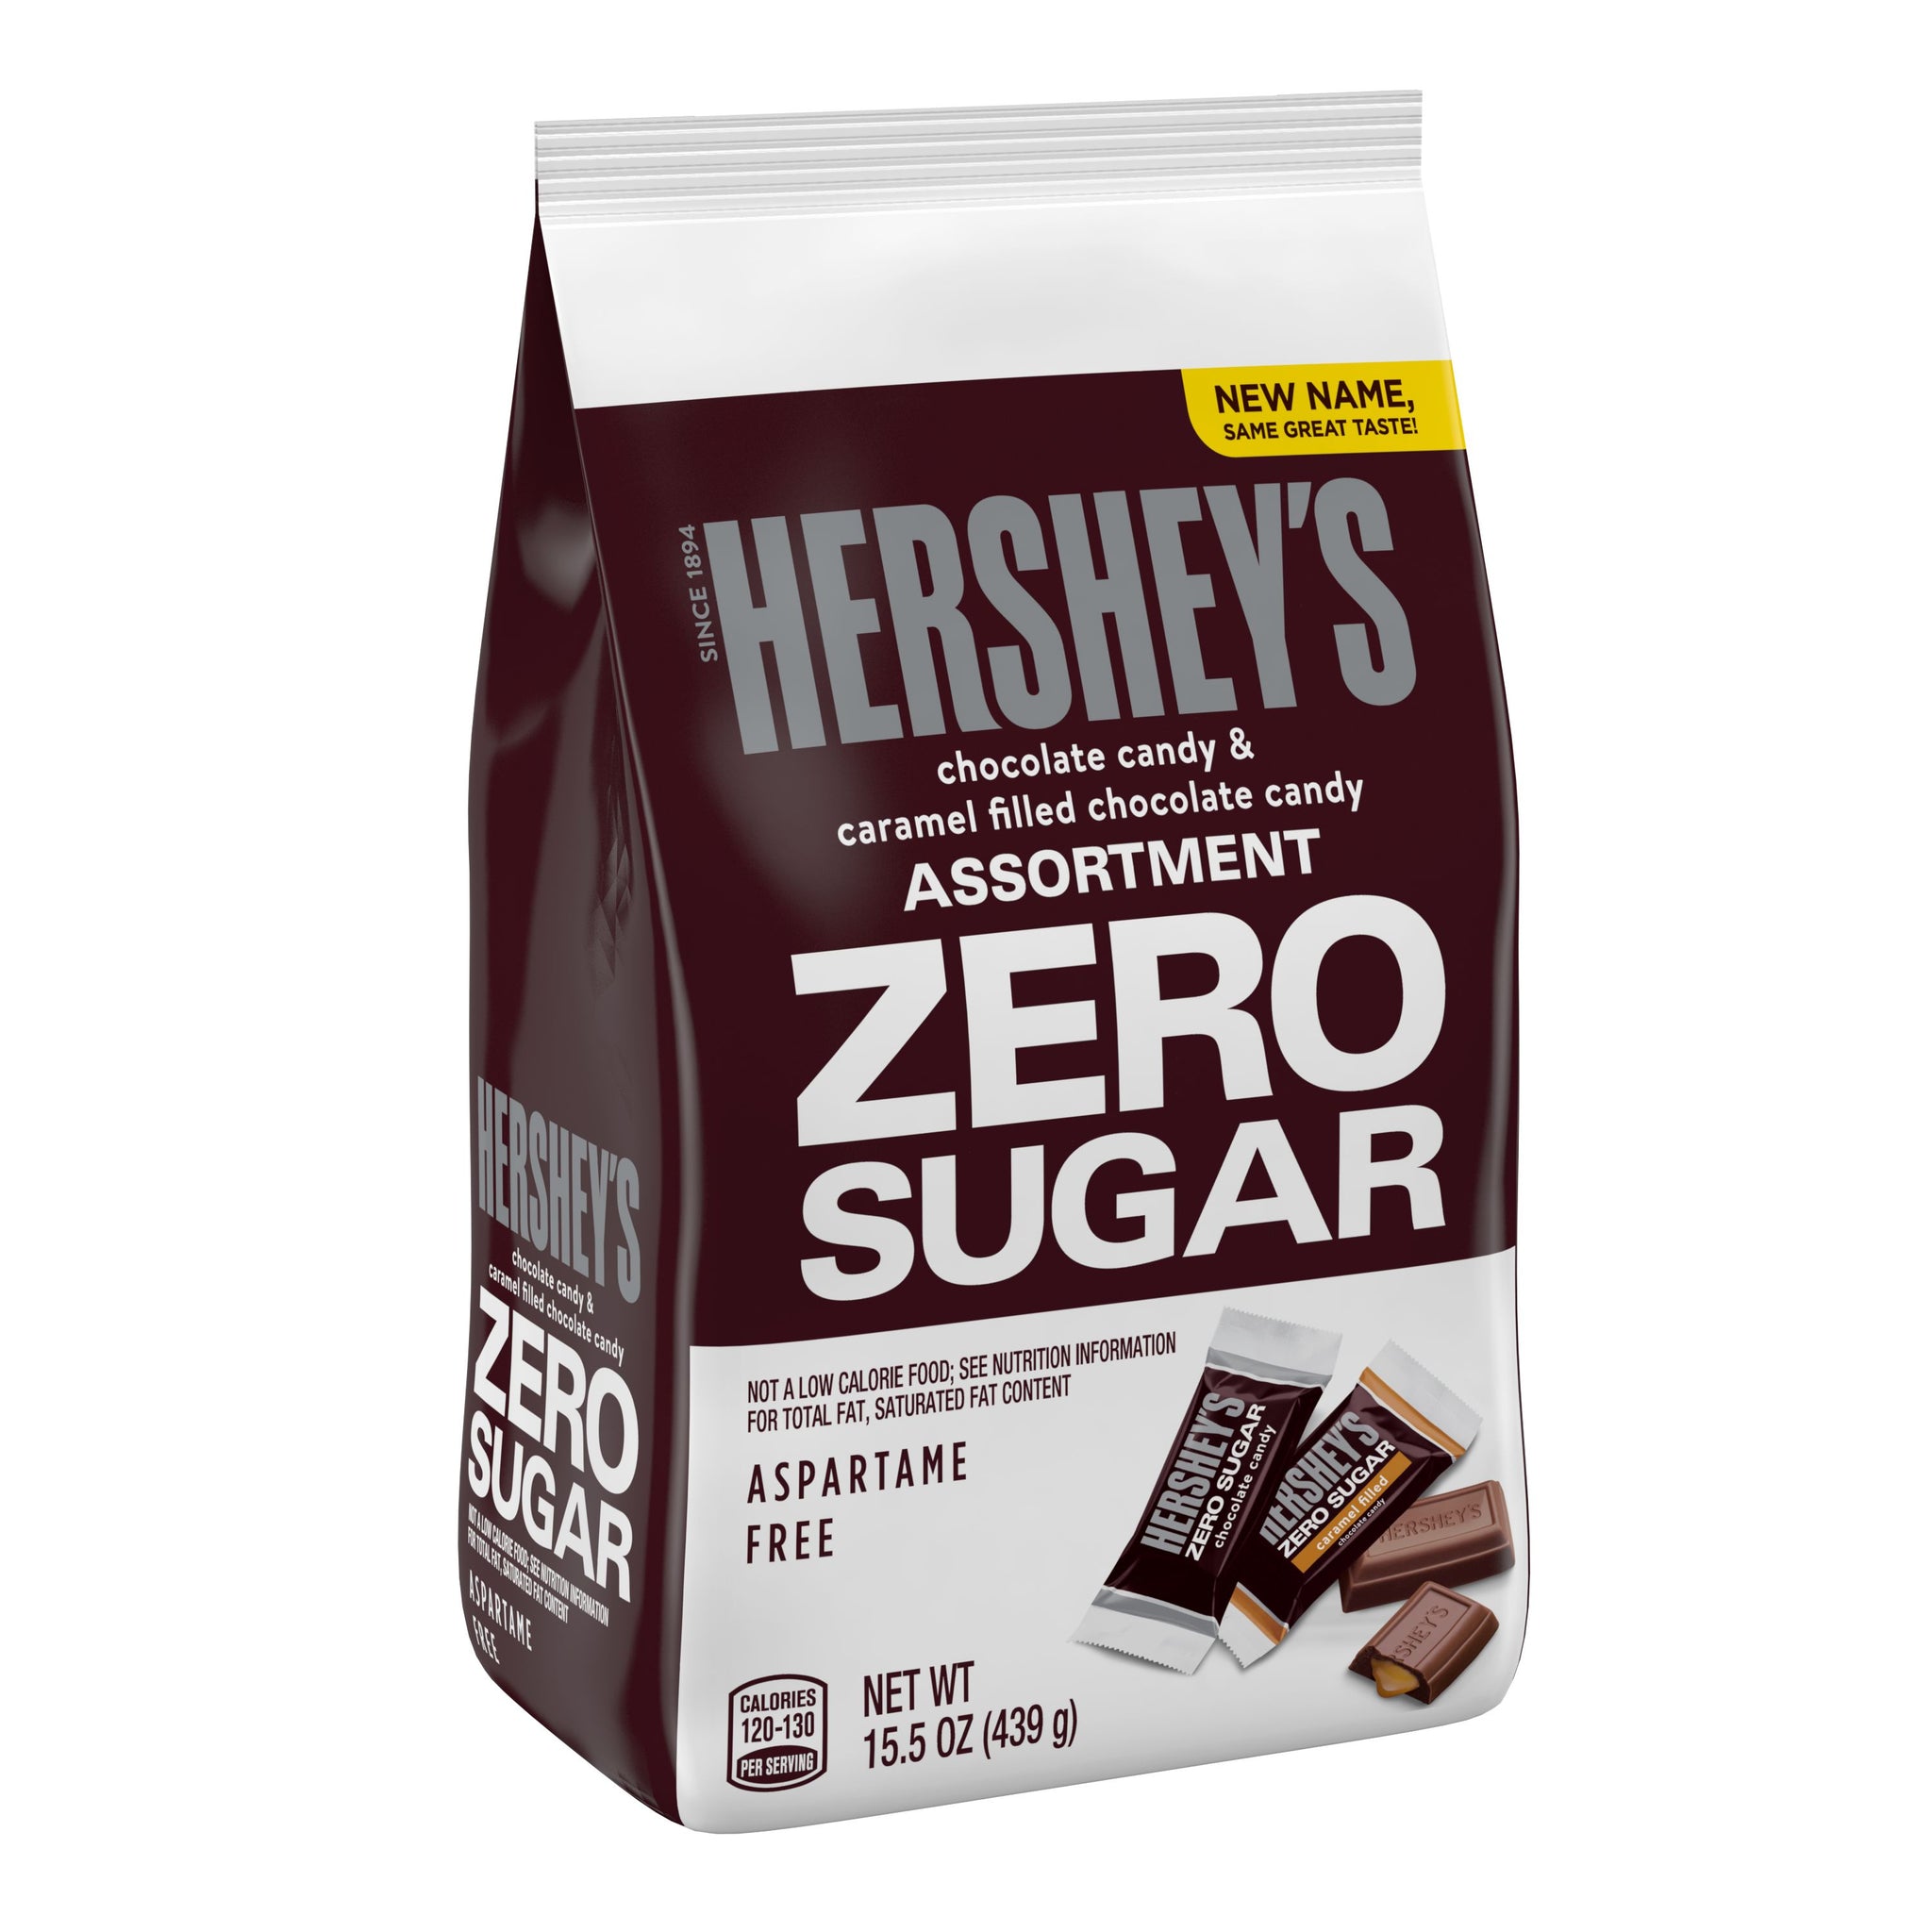 Hershey's Assortment Zero Sugar Chocolate Candy, 15.5oz